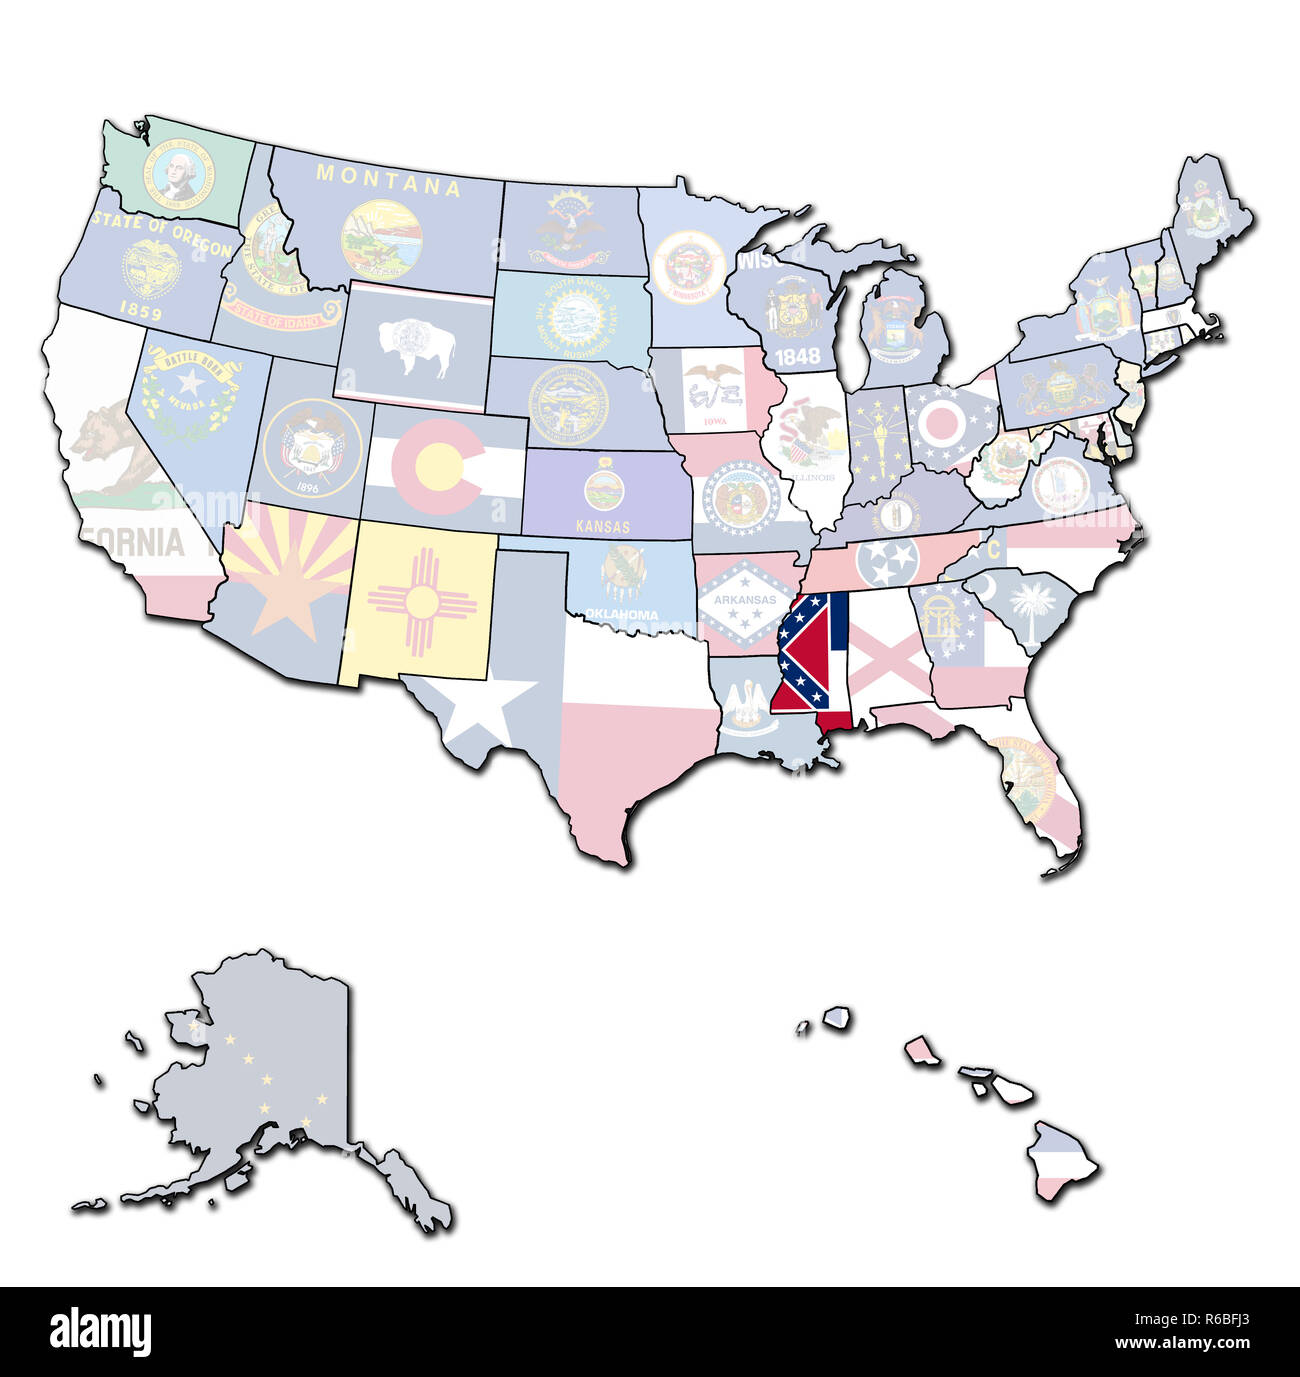 La Mississippi sulla mappa di Stati Uniti d'America Foto Stock